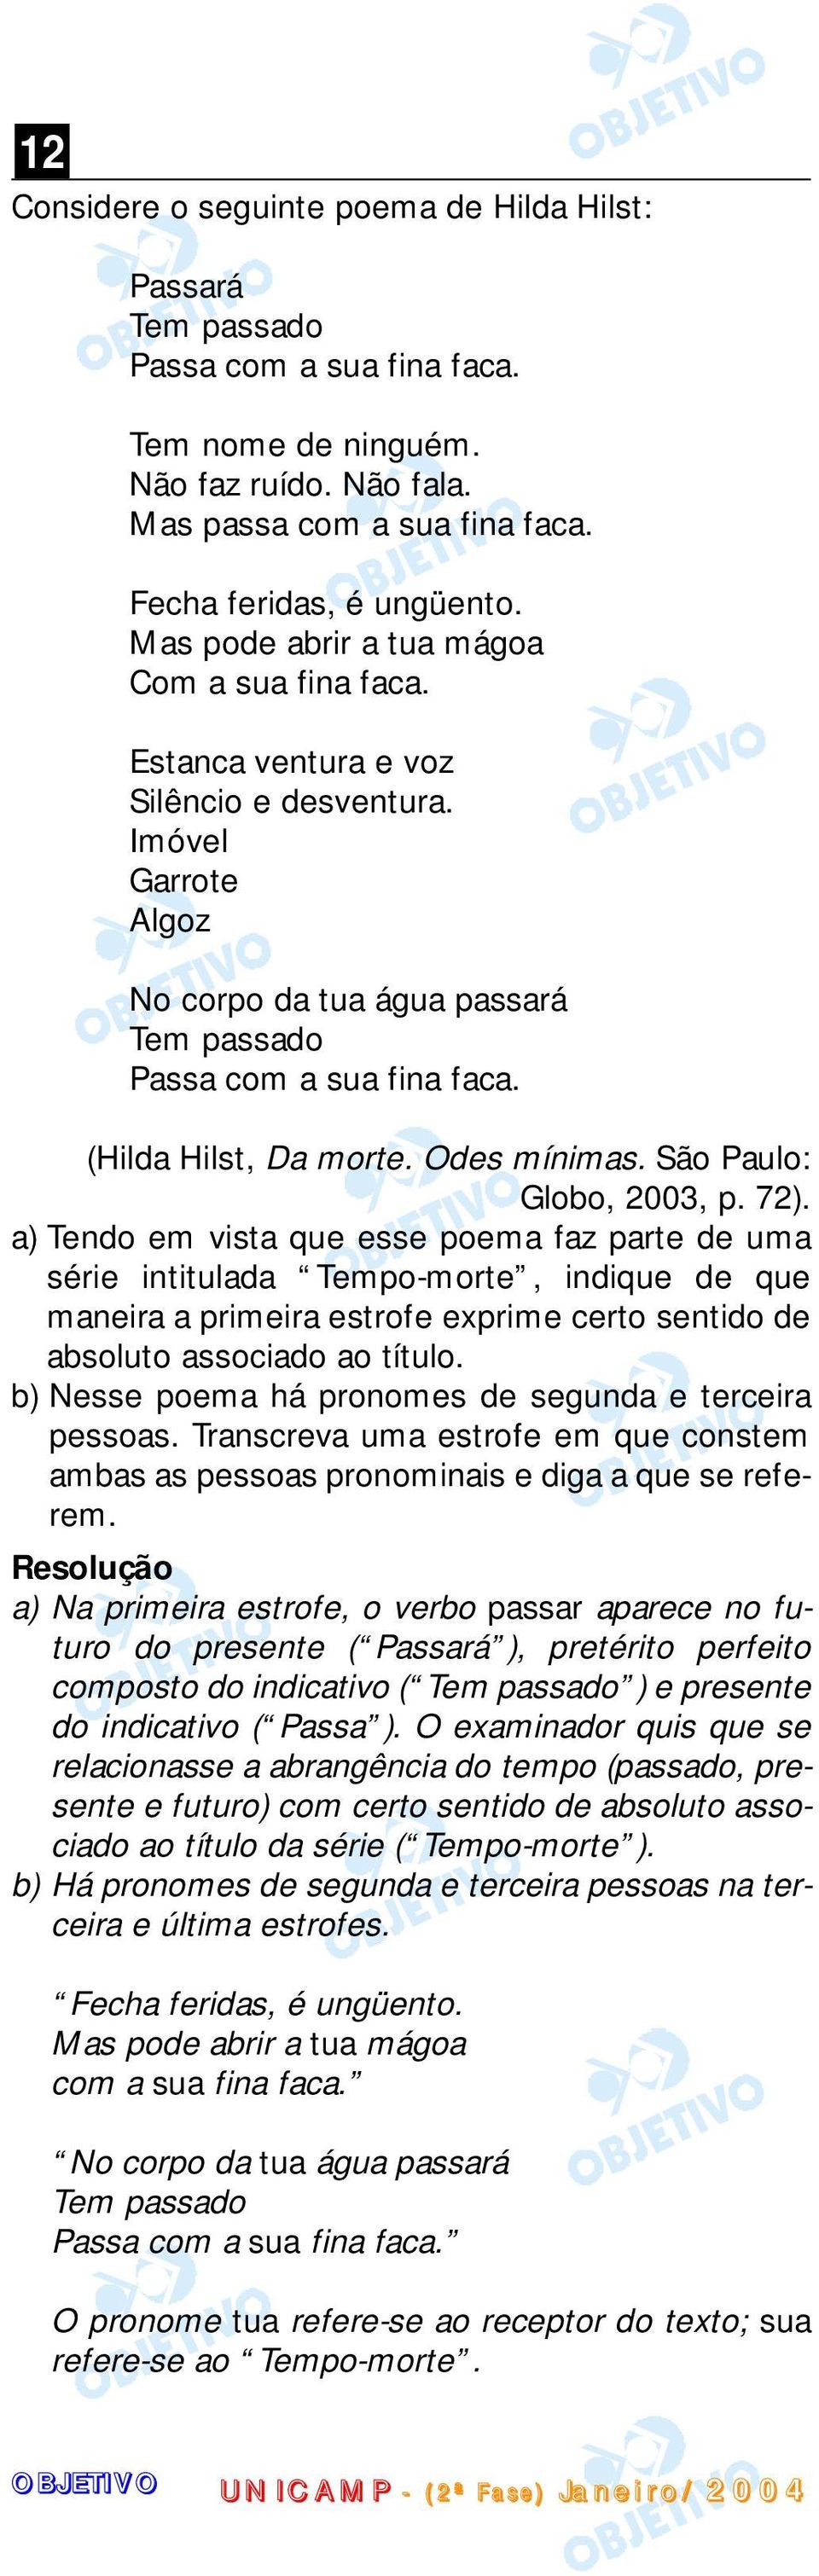 (Hilda Hilst, Da morte. Odes mínimas. São Paulo: Globo, 2003, p. 72).